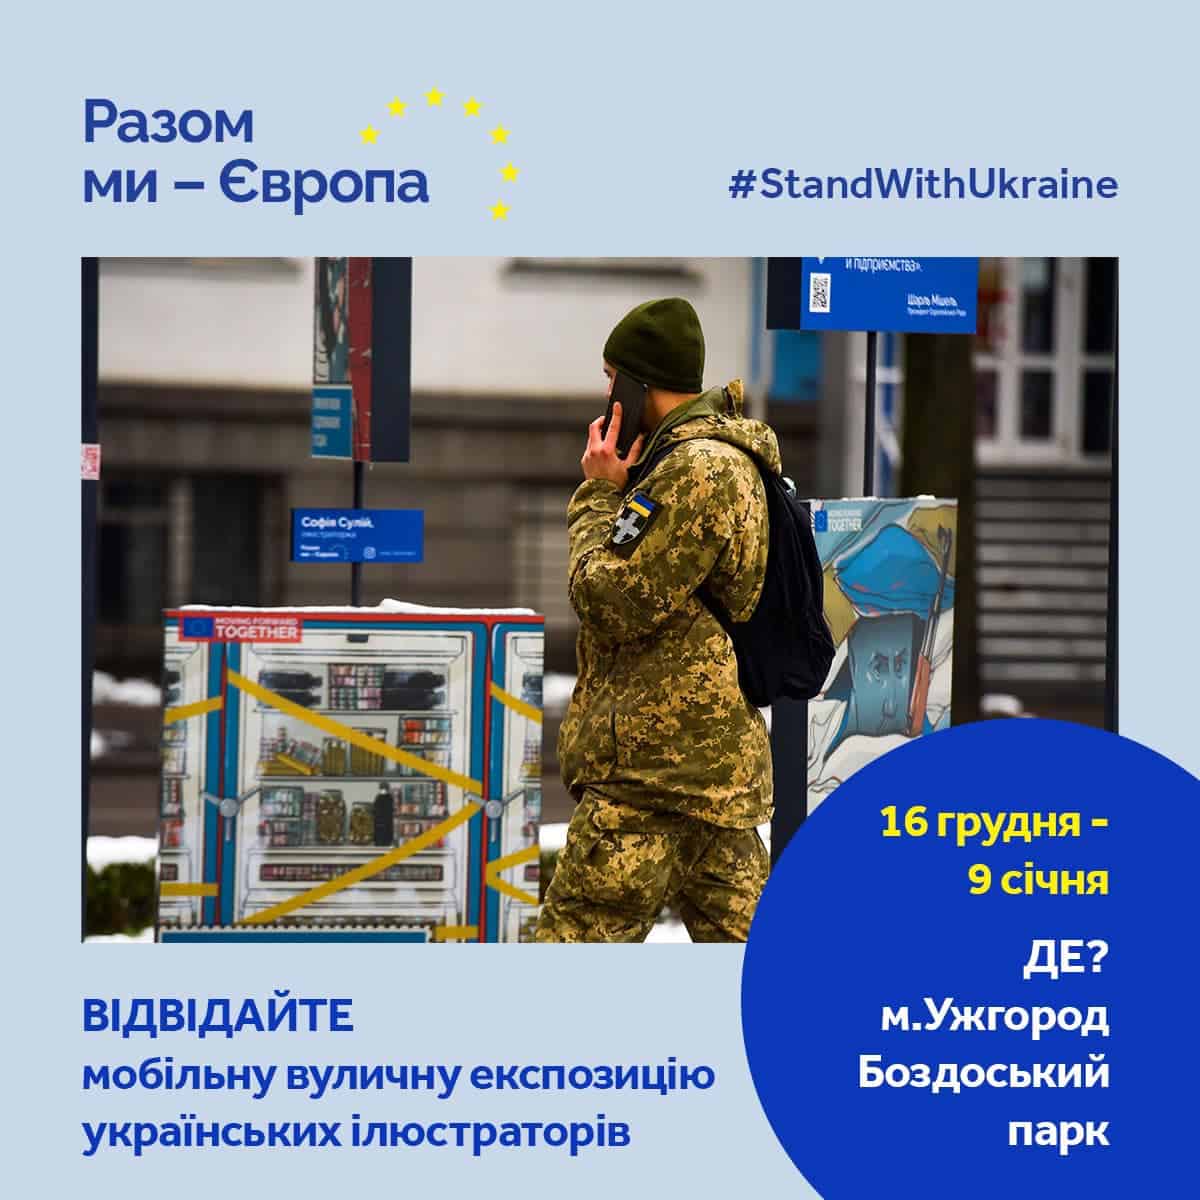 В  Ужгороді – пересувна експозиція «Разом ми – Європа» про непохитну підтримку України з боку ЄС у відповідь на російське вторгнення